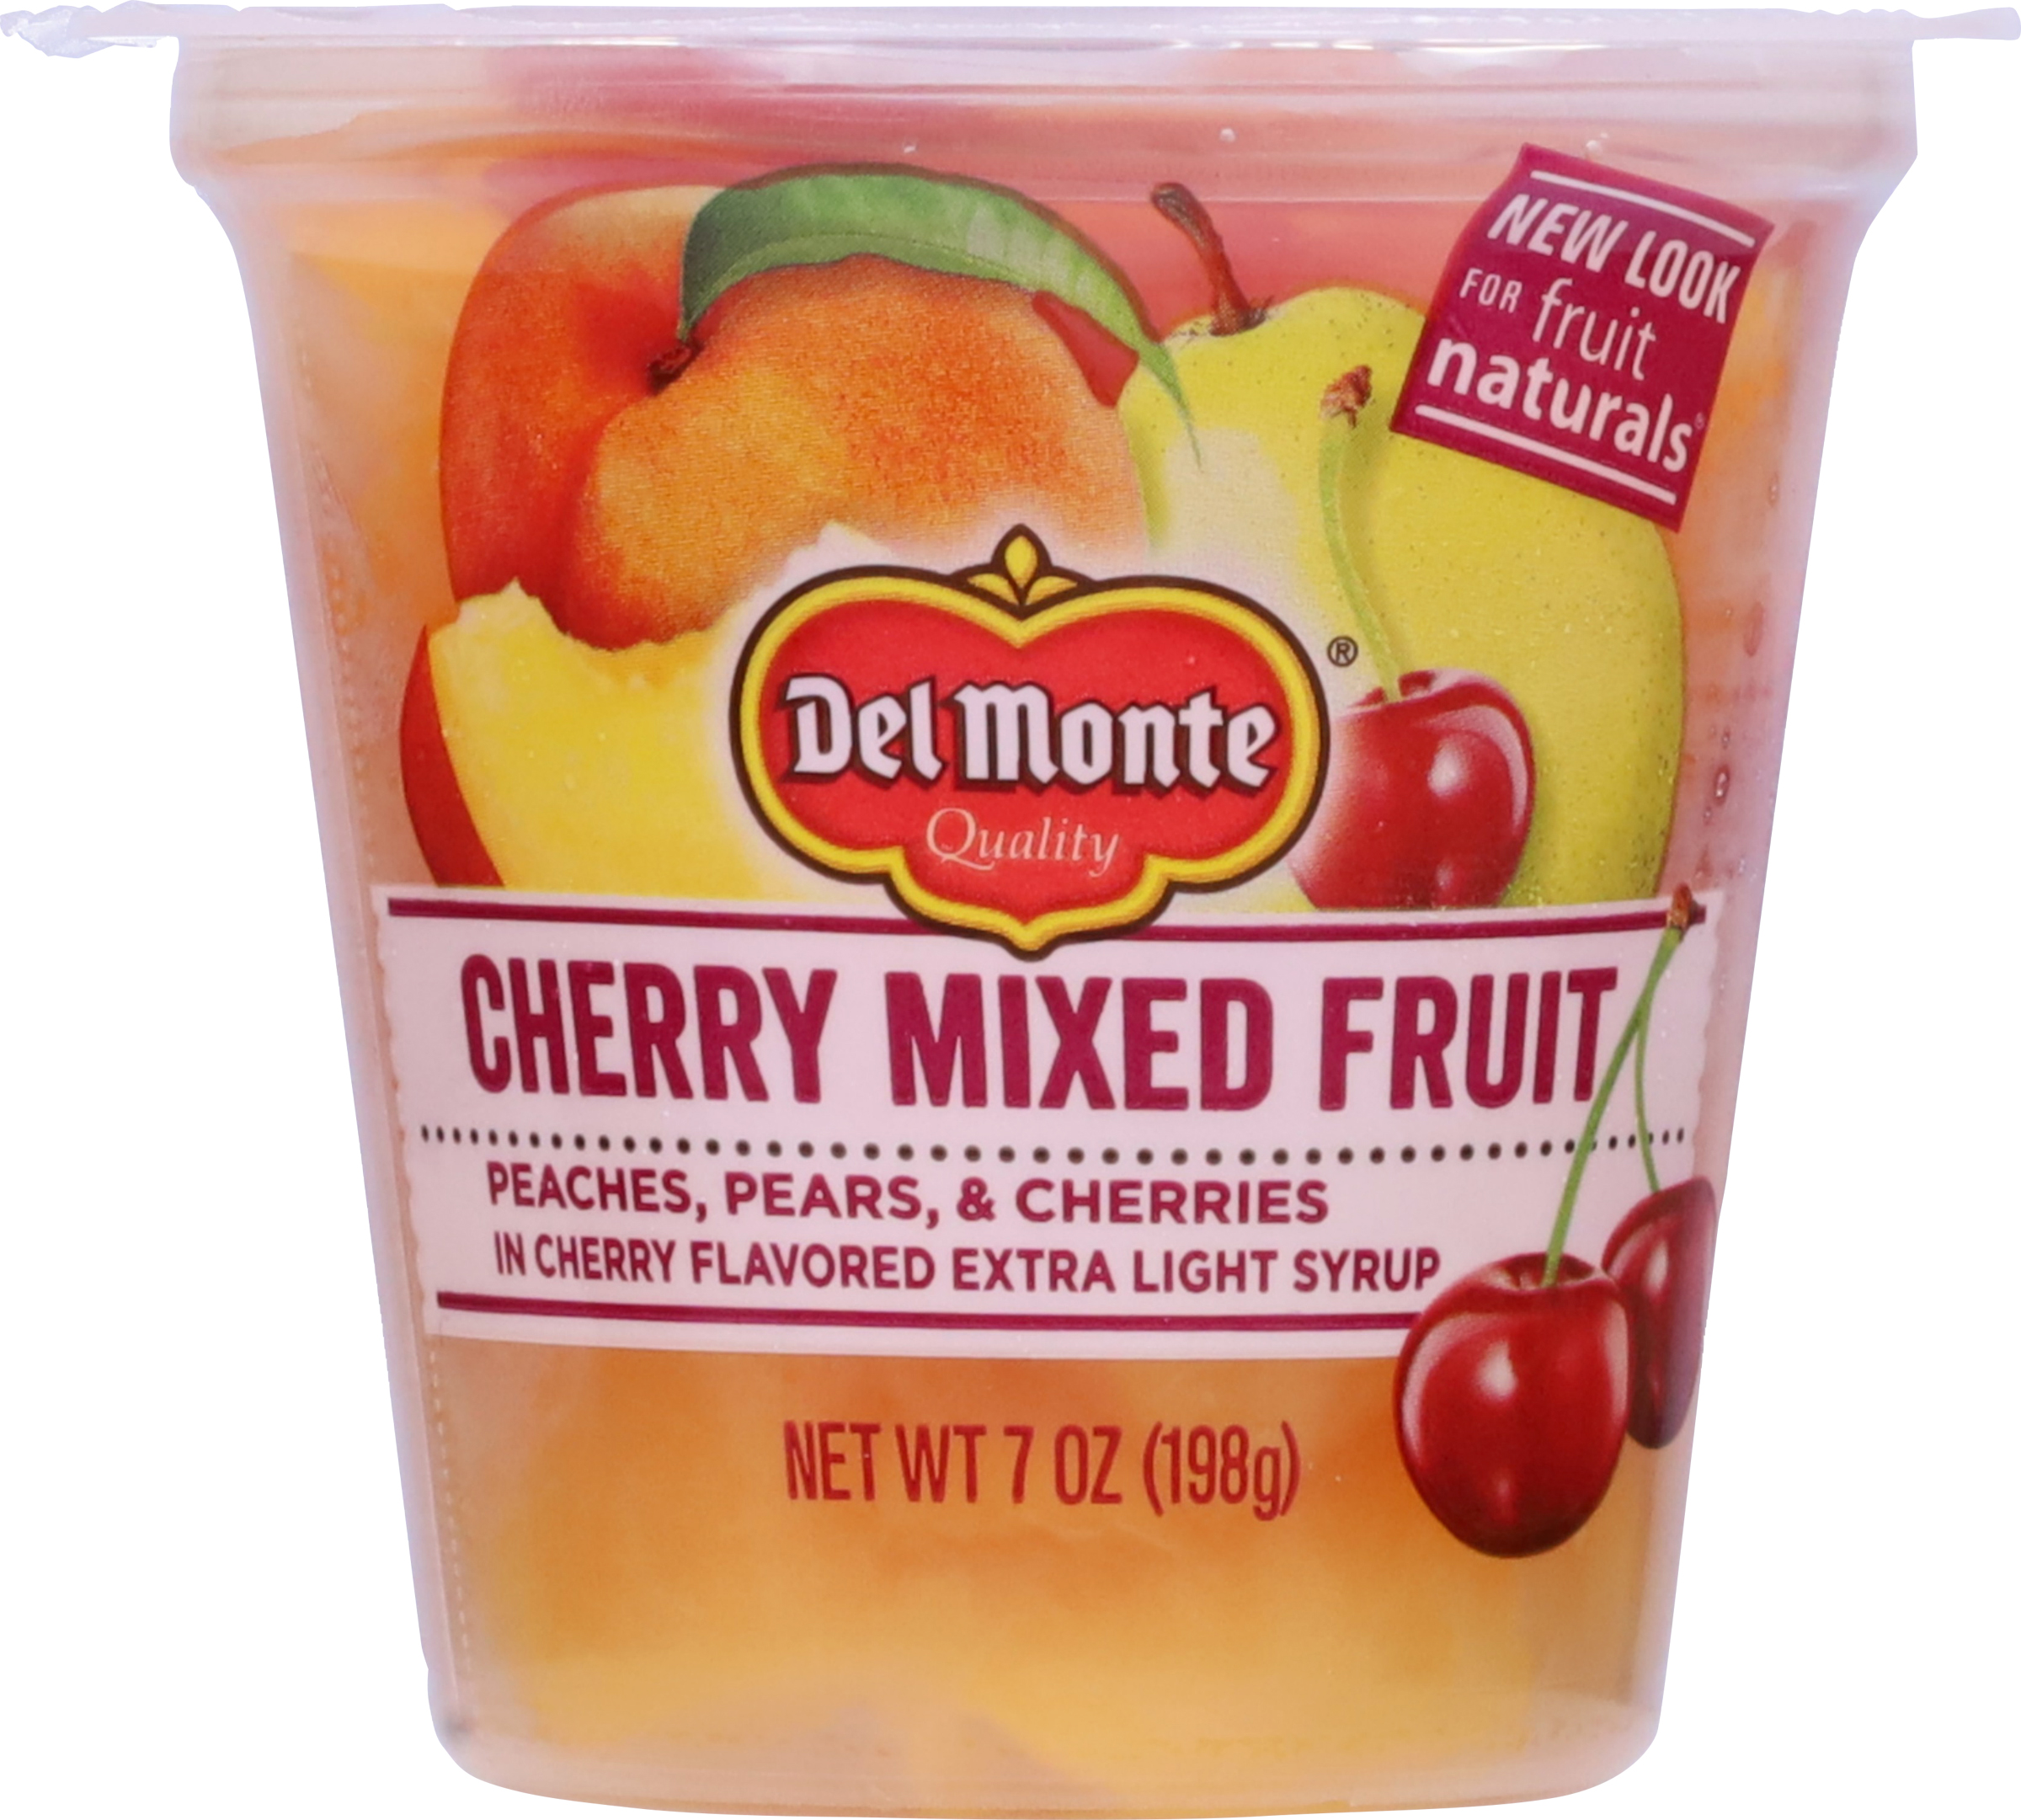 Cherry Mixed Fruit image